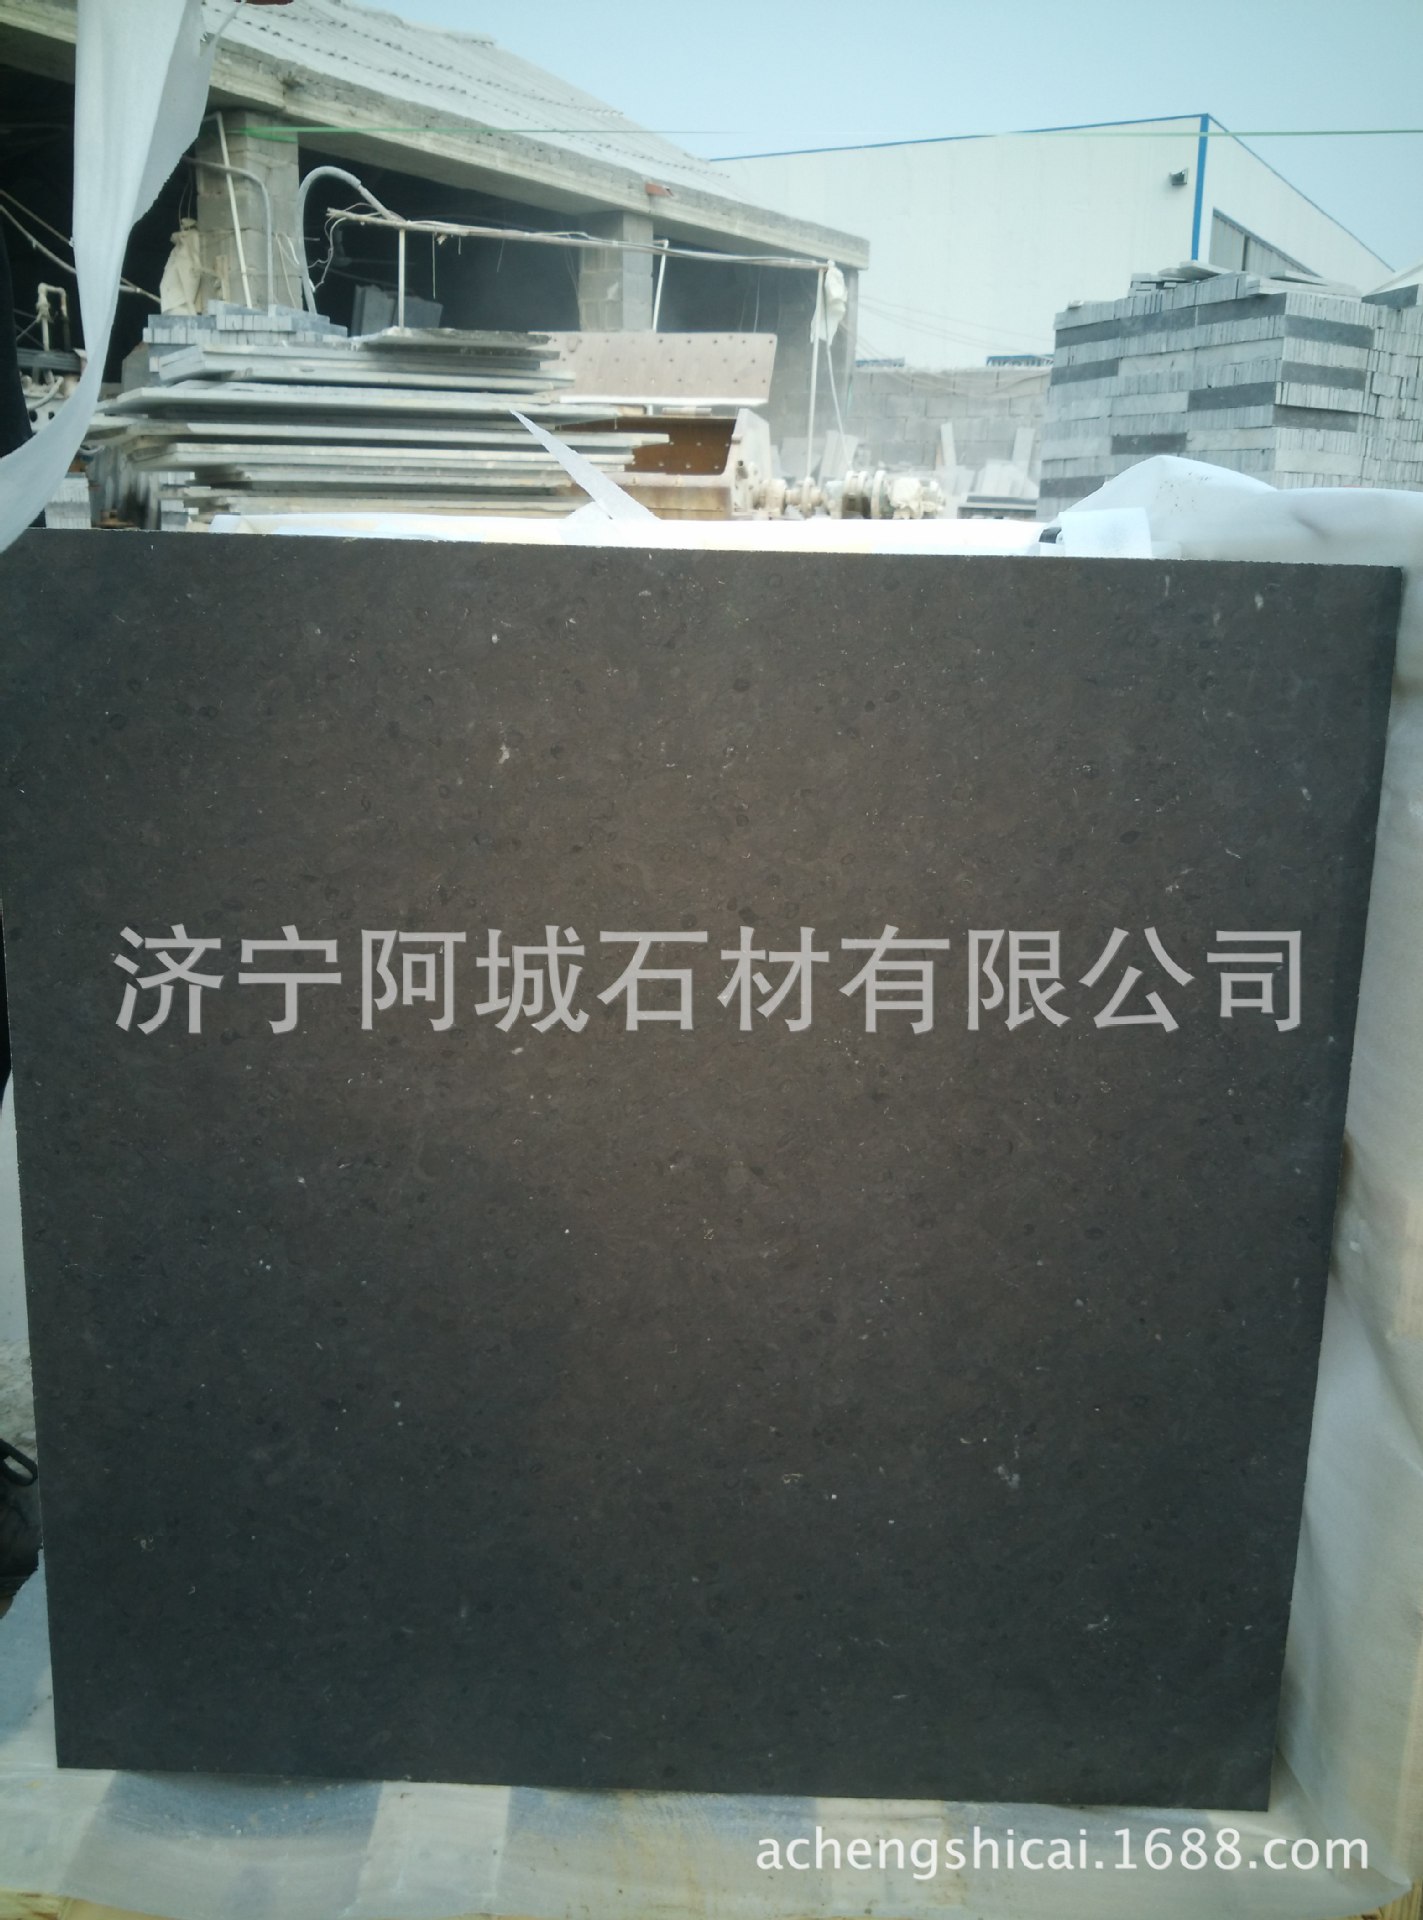 山东厂家长期直销青石板材,盲道石板材 加工各种亚光板材